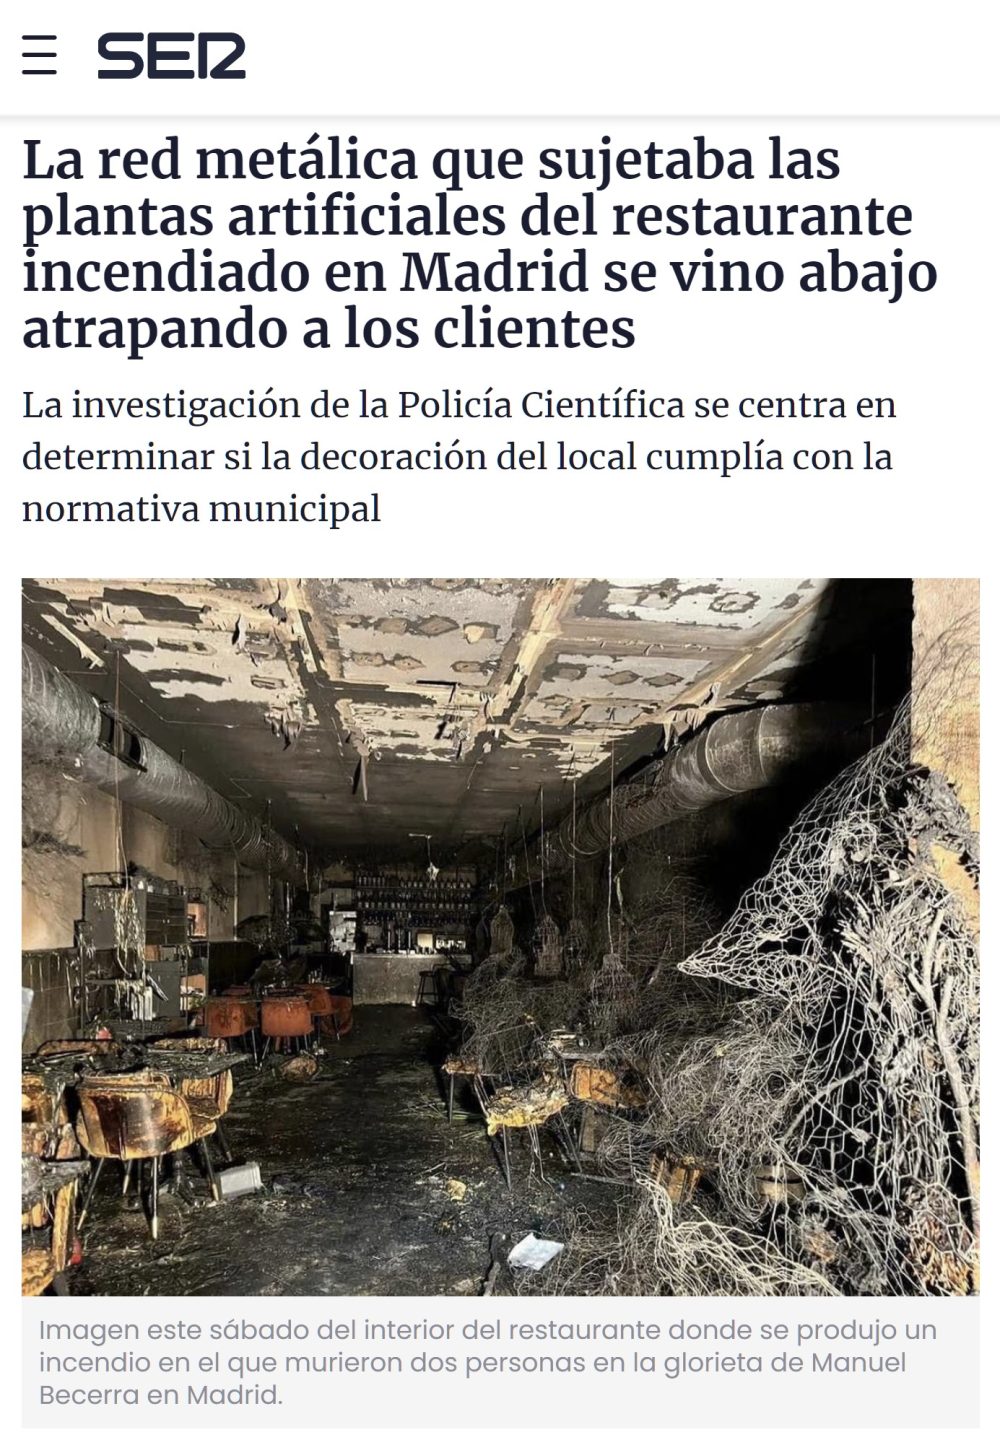 El restaurante incendiado en Madrid se convirtió en una trampa mortaI